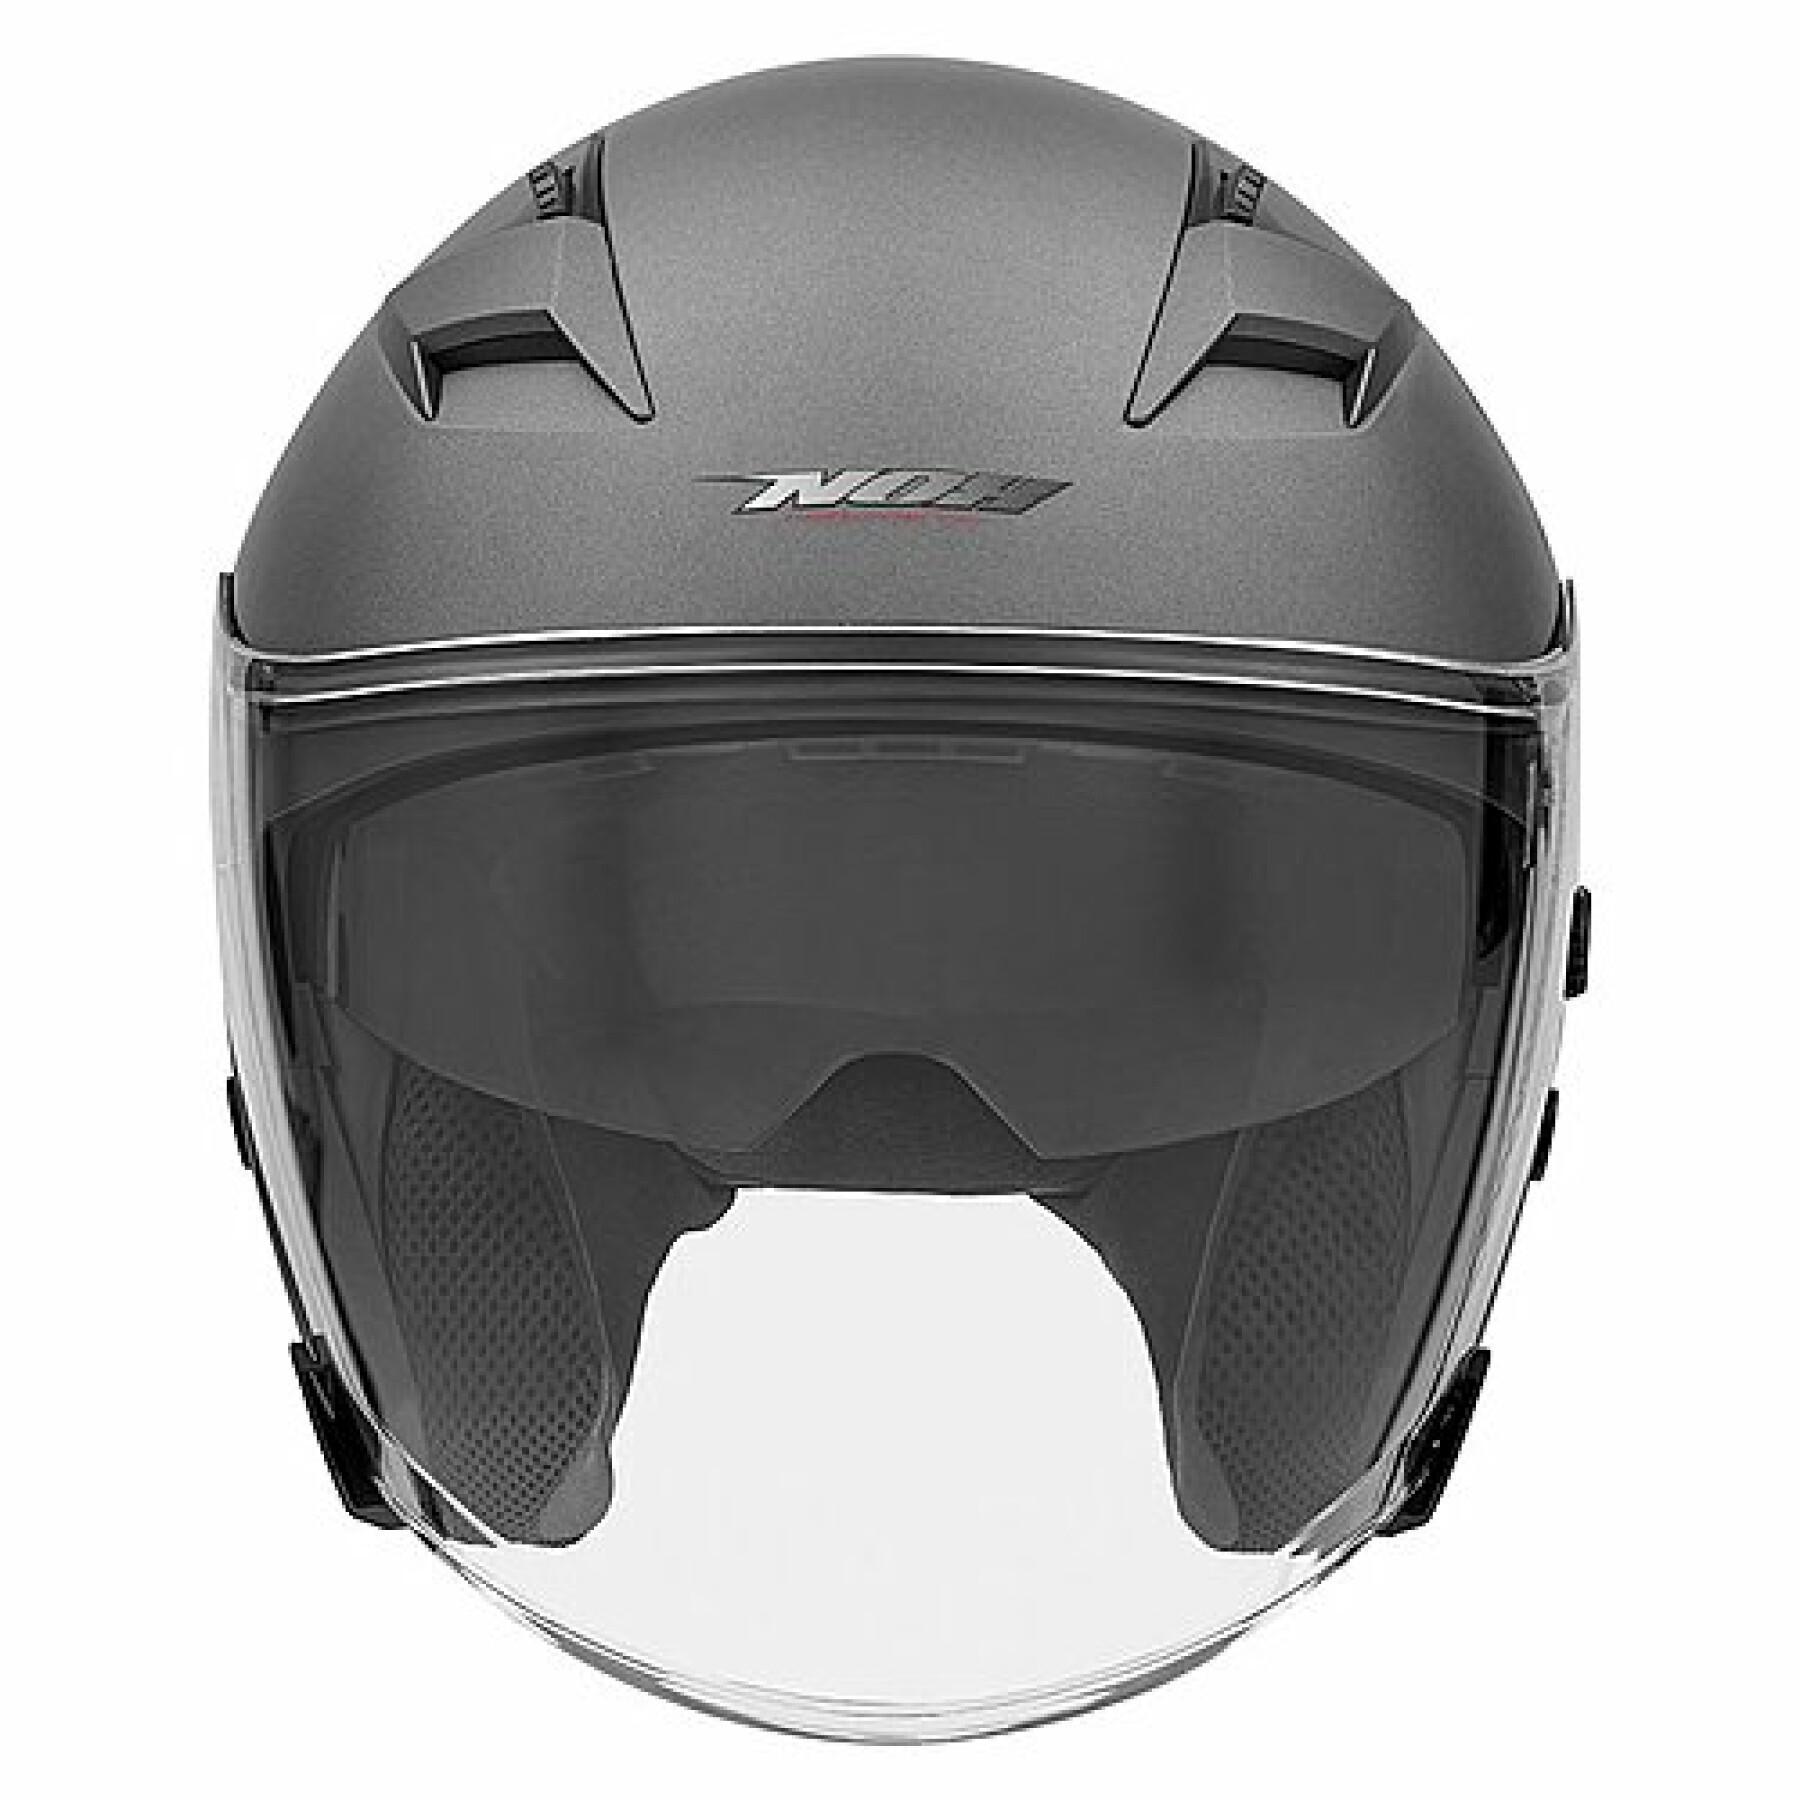 Jet motorcycle helmet Nox N127